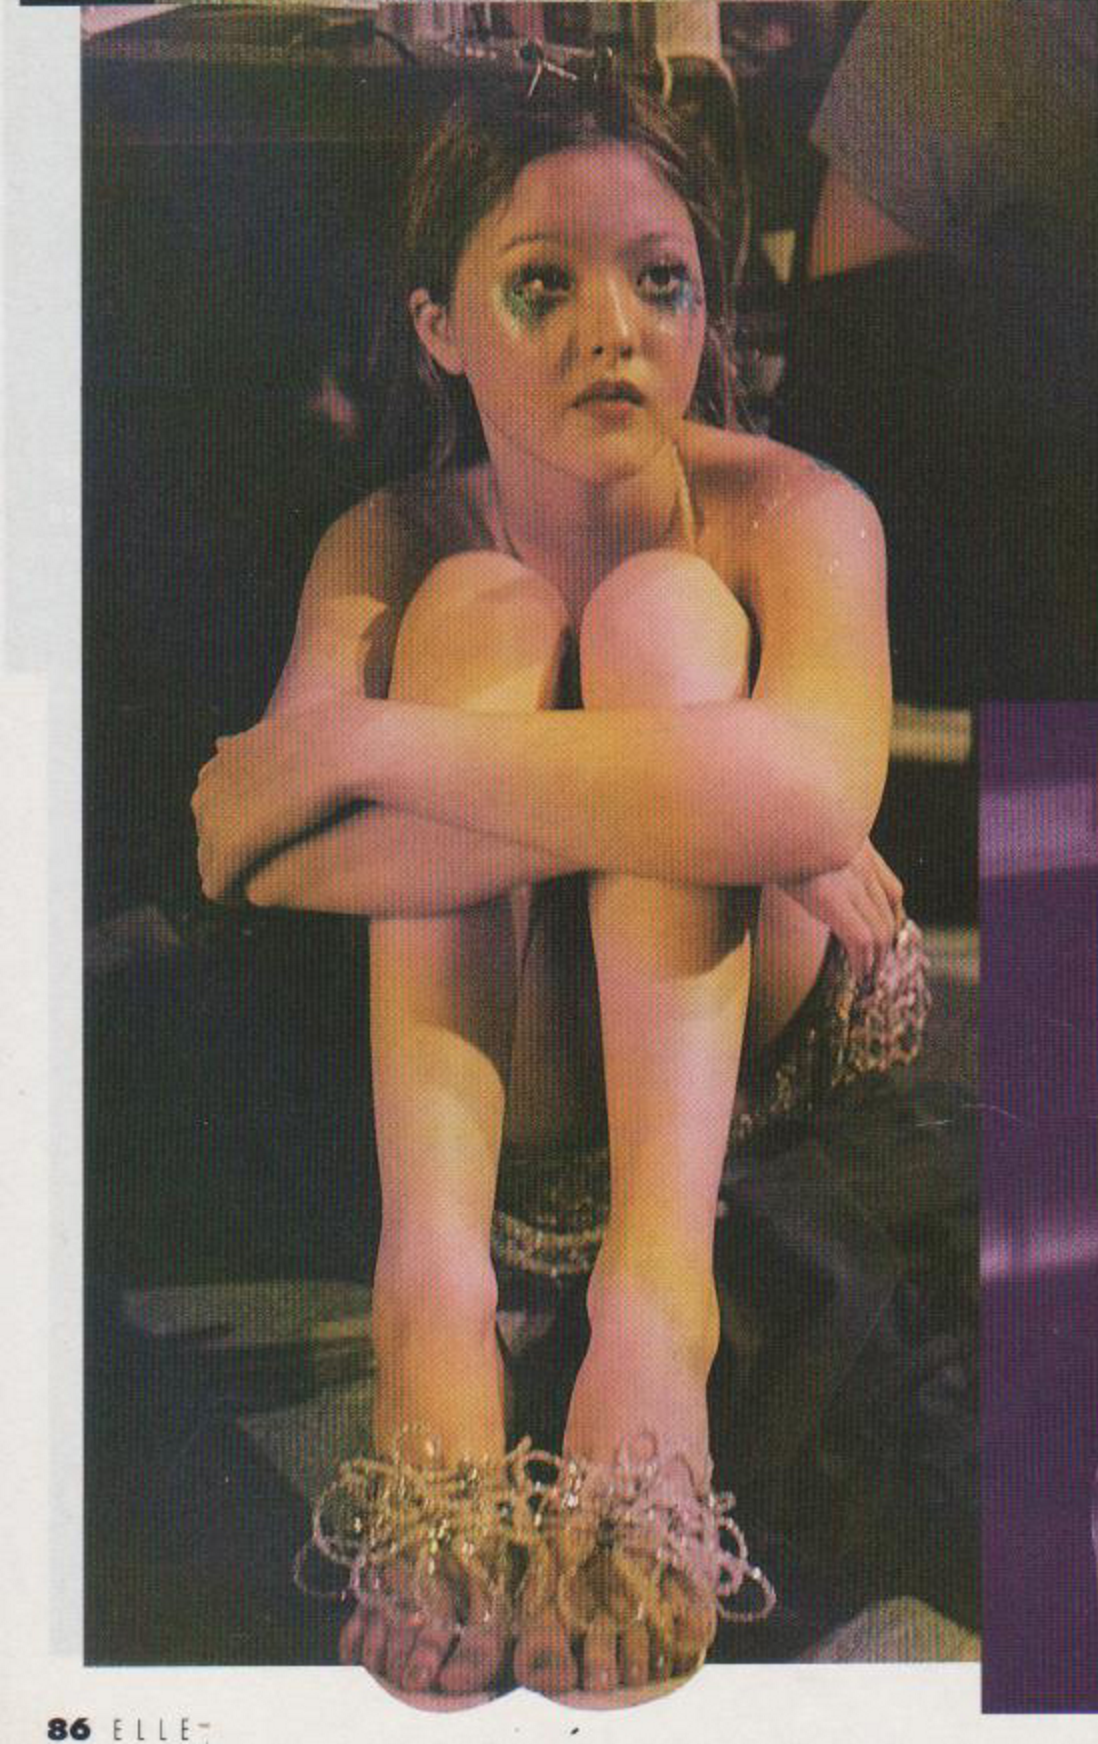 devon-aoki: Devon Aoki backstage at Lainey Keogh S/S 1998